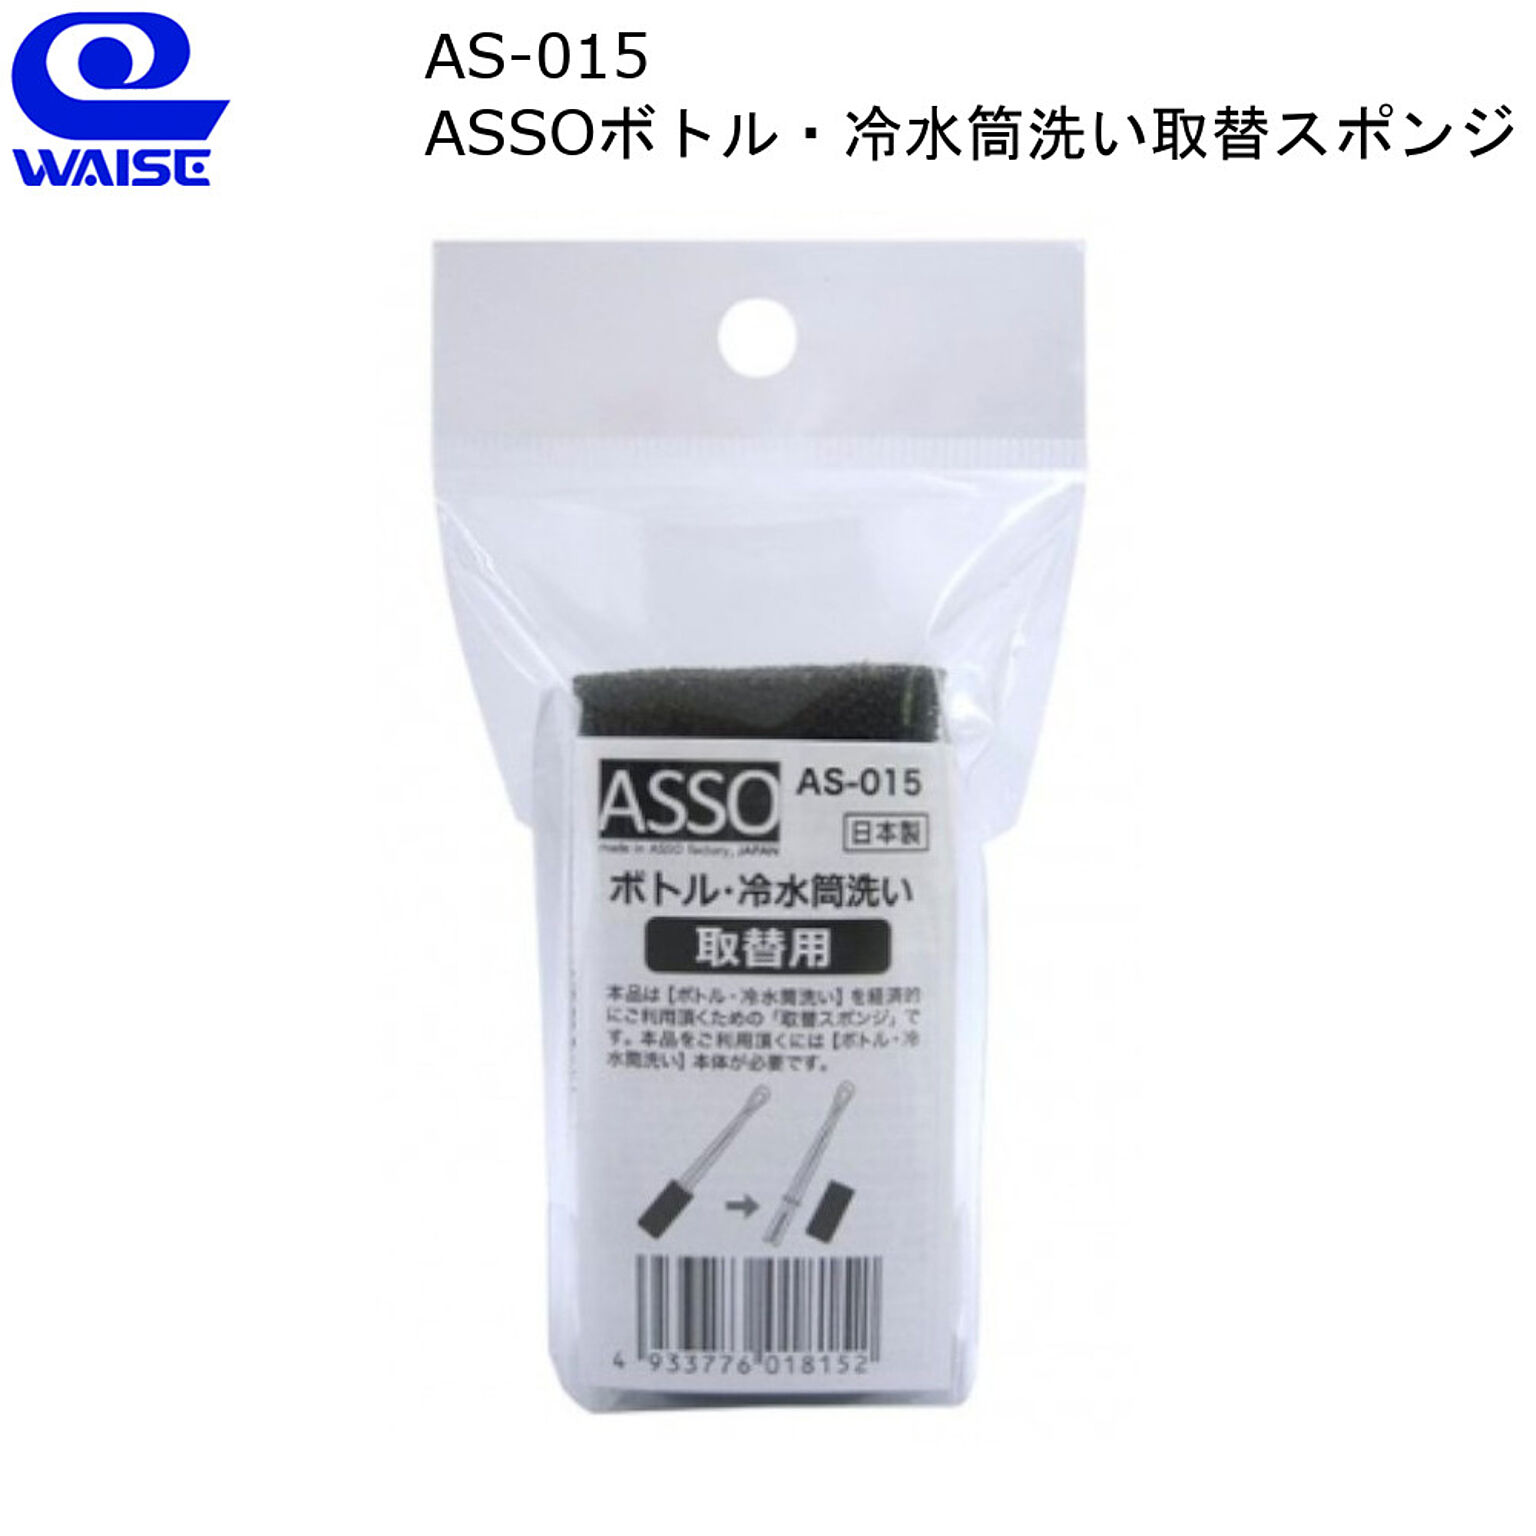 ASSO ボトル 冷水筒洗い取替スポンジ AS-015 ワイズ